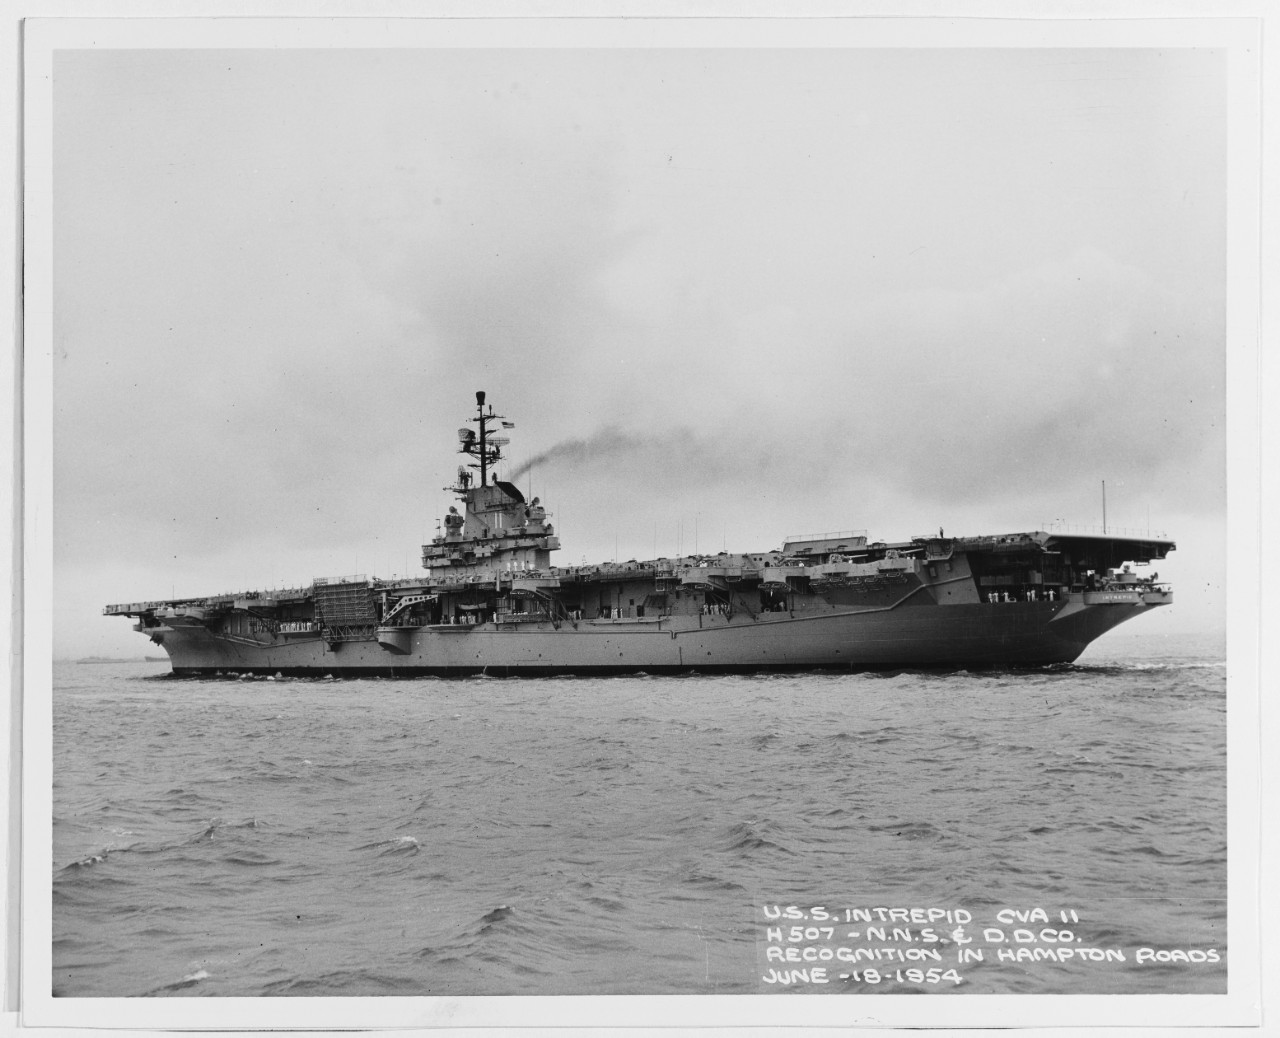 USS INTREPID (CVA-11)